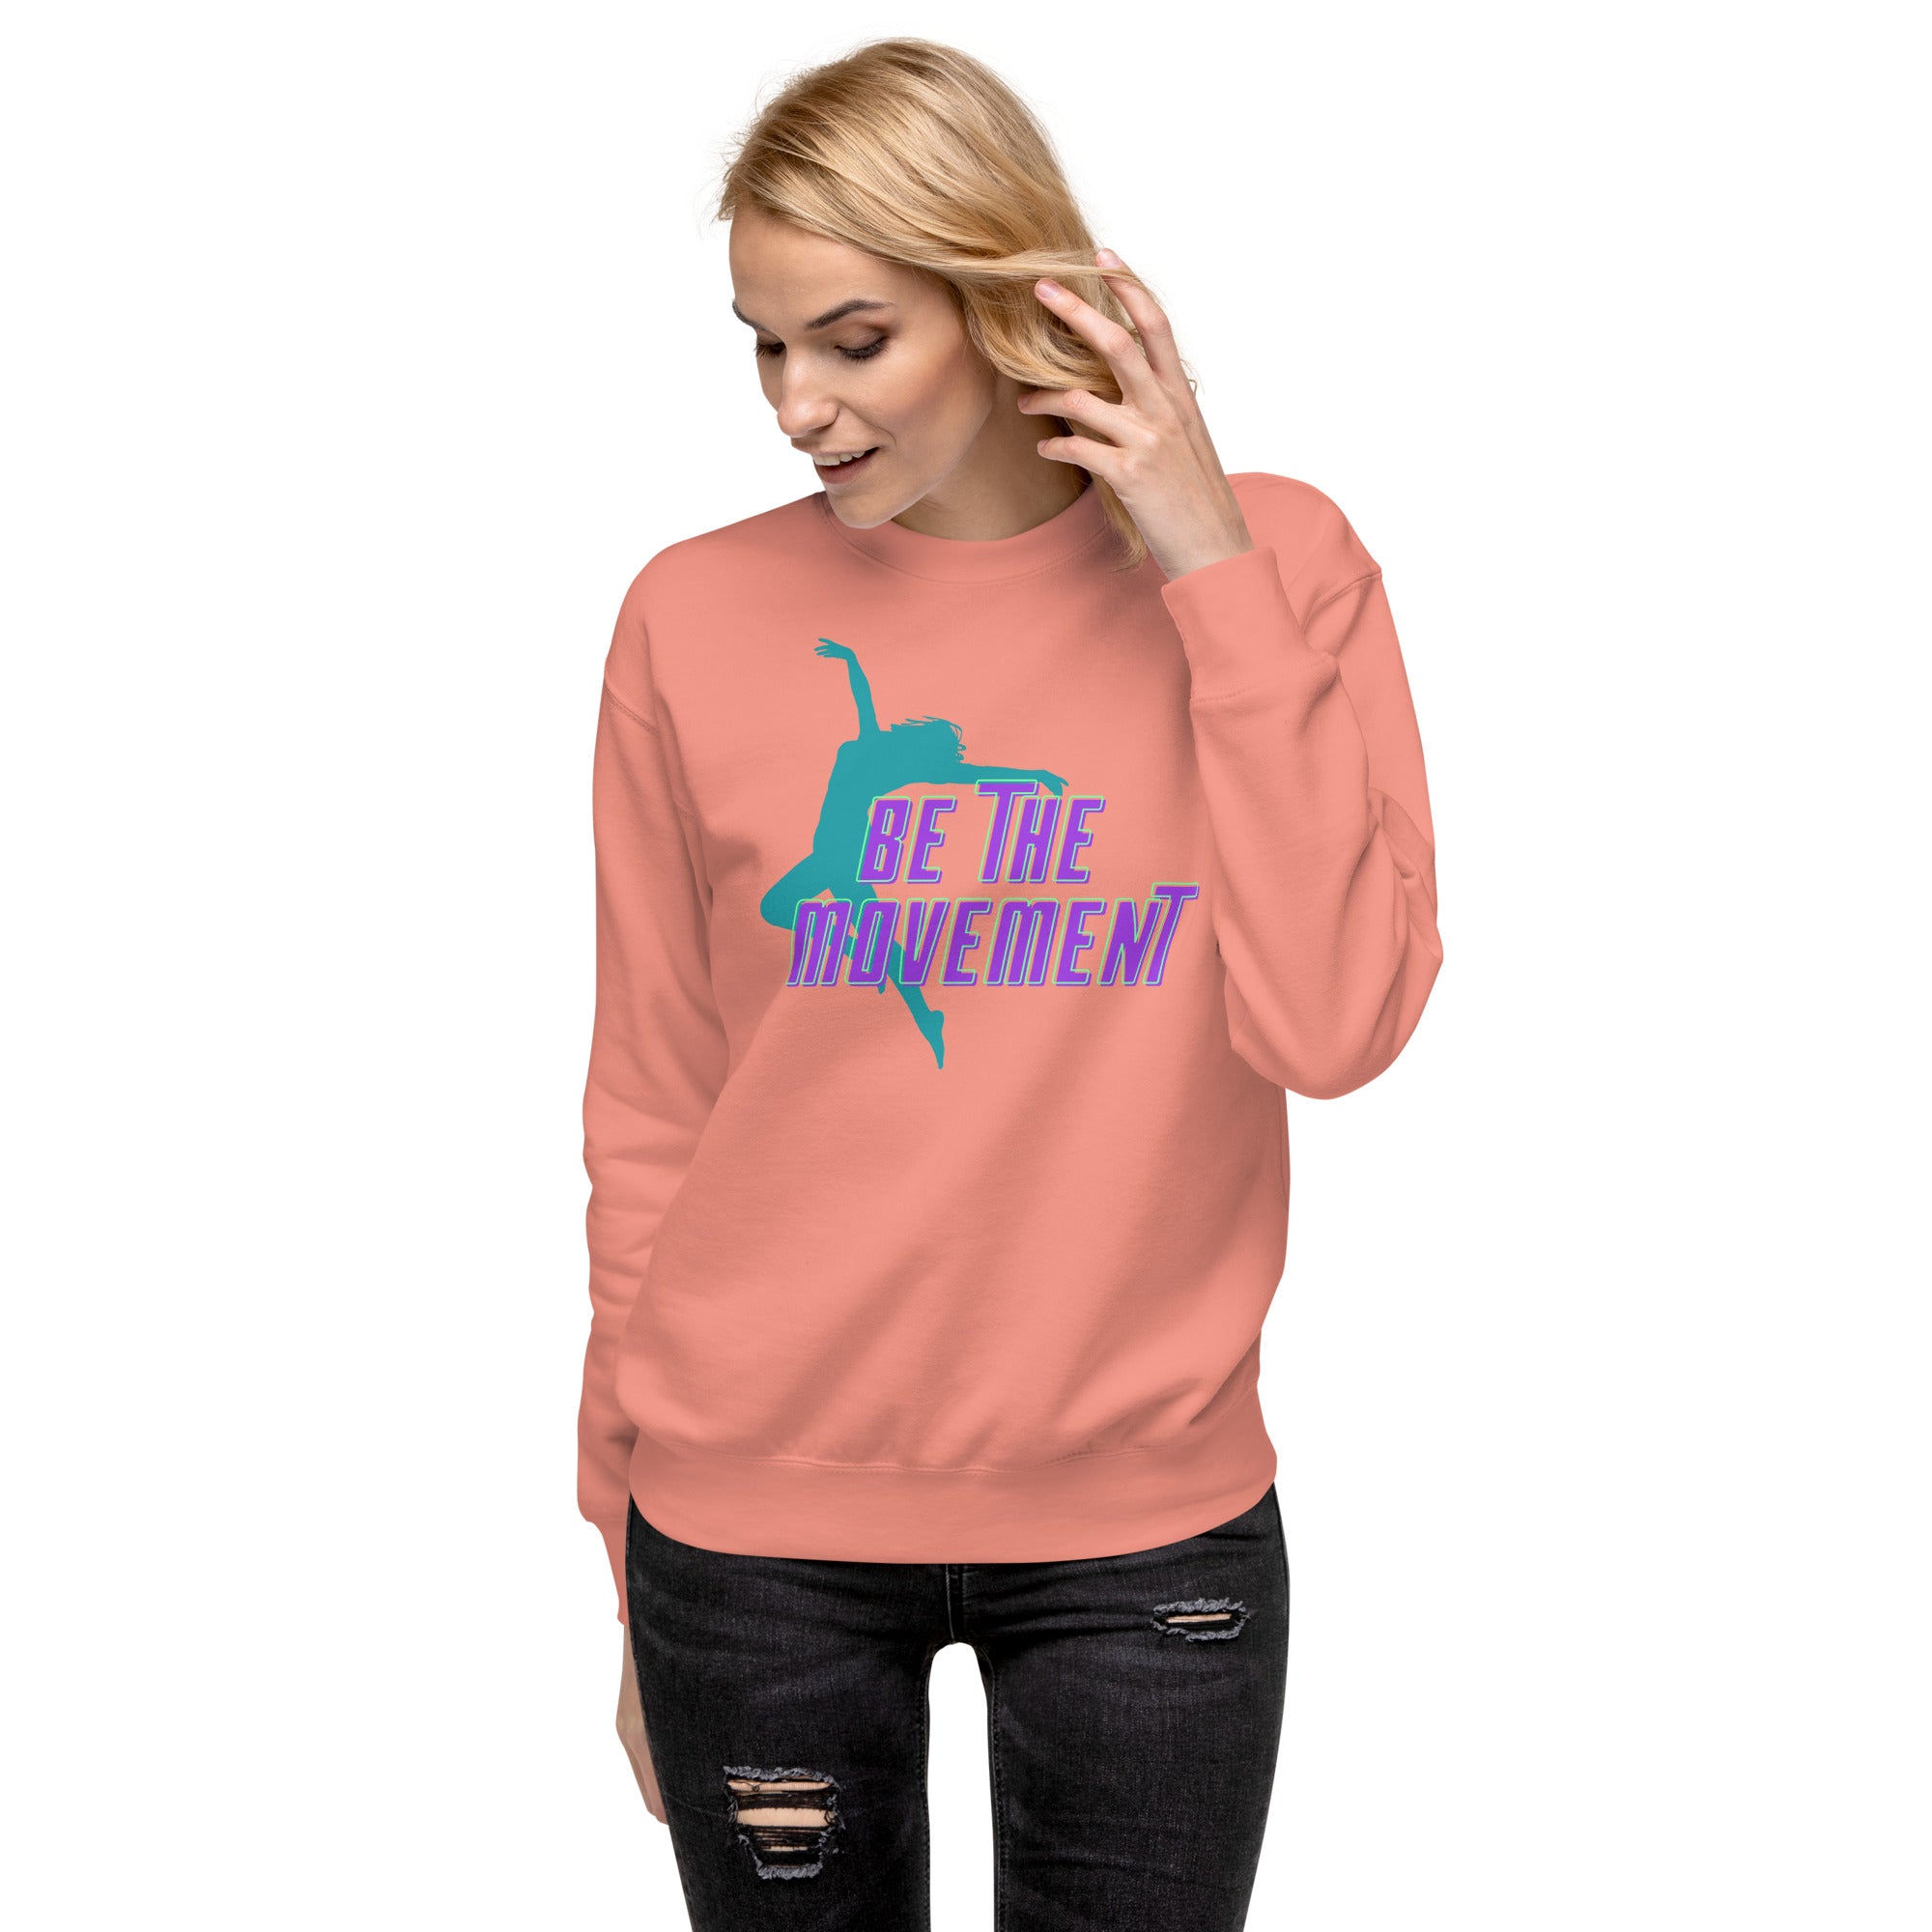 Be The Movement Women's Premium Sweatshirt